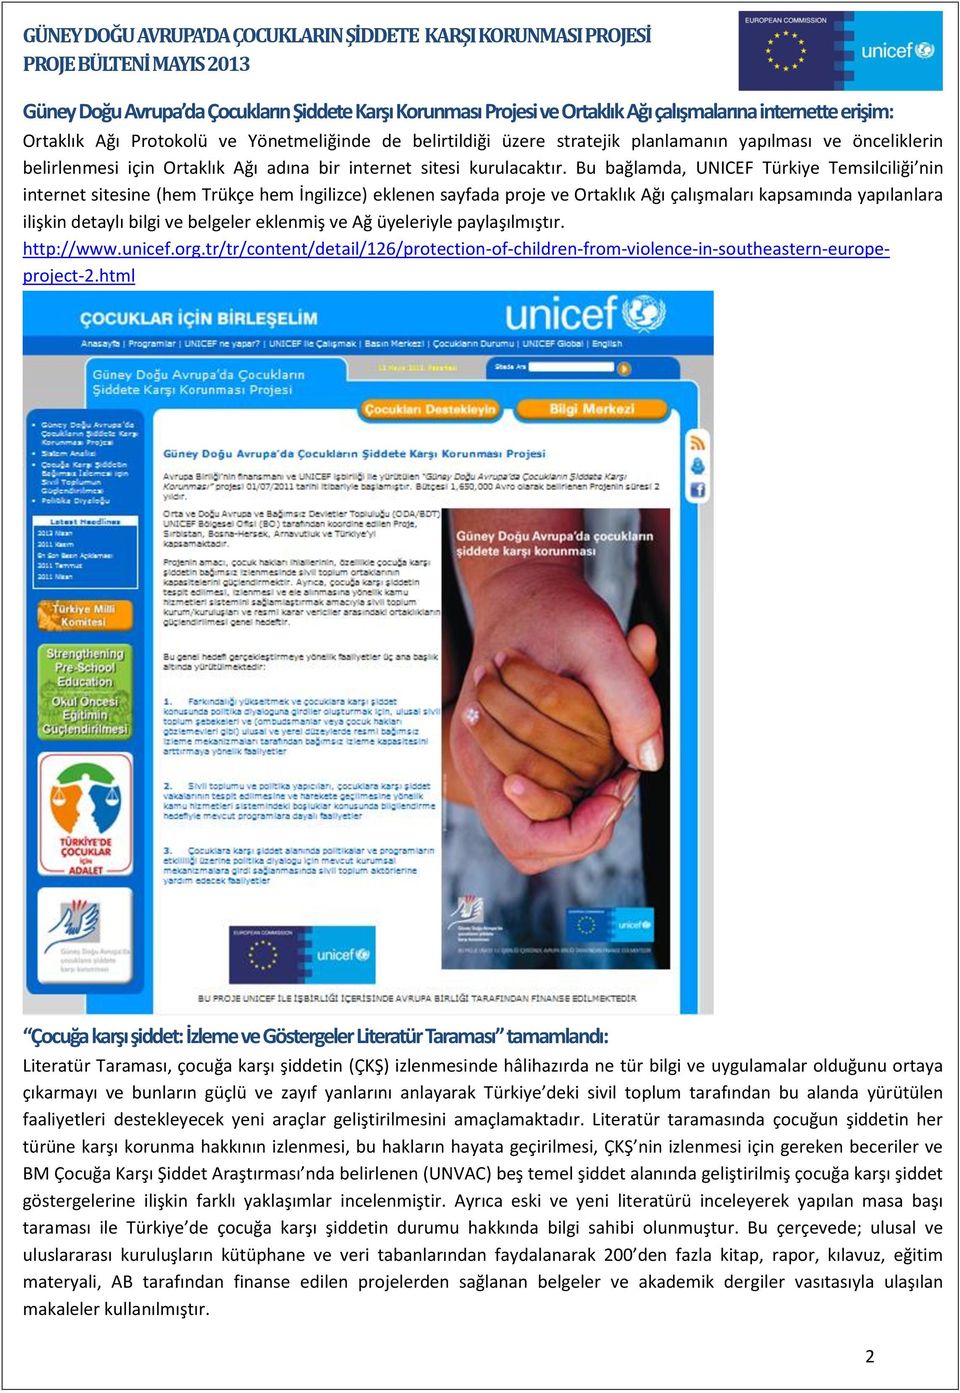 Bu bağlamda, UNICEF Türkiye Temsilciliği nin internet sitesine (hem Trükçe hem İngilizce) eklenen sayfada proje ve Ortaklık Ağı çalışmaları kapsamında yapılanlara ilişkin detaylı bilgi ve belgeler